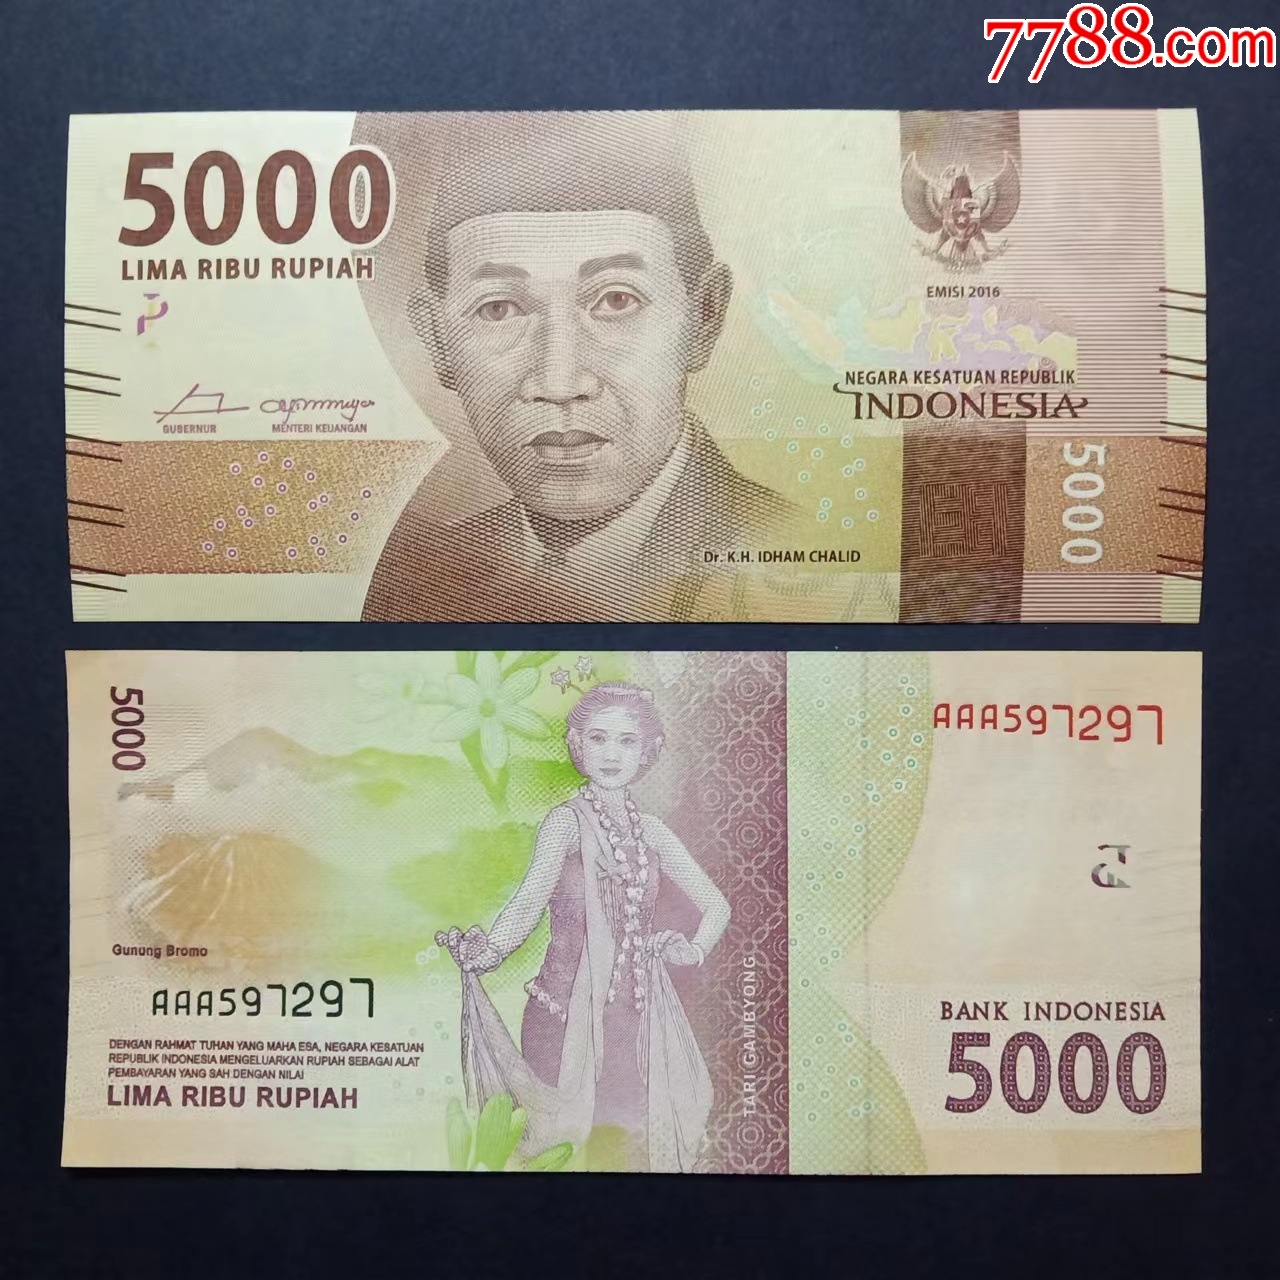 印尼盾 印度尼西亚 钱 - Pixabay上的免费照片 - Pixabay